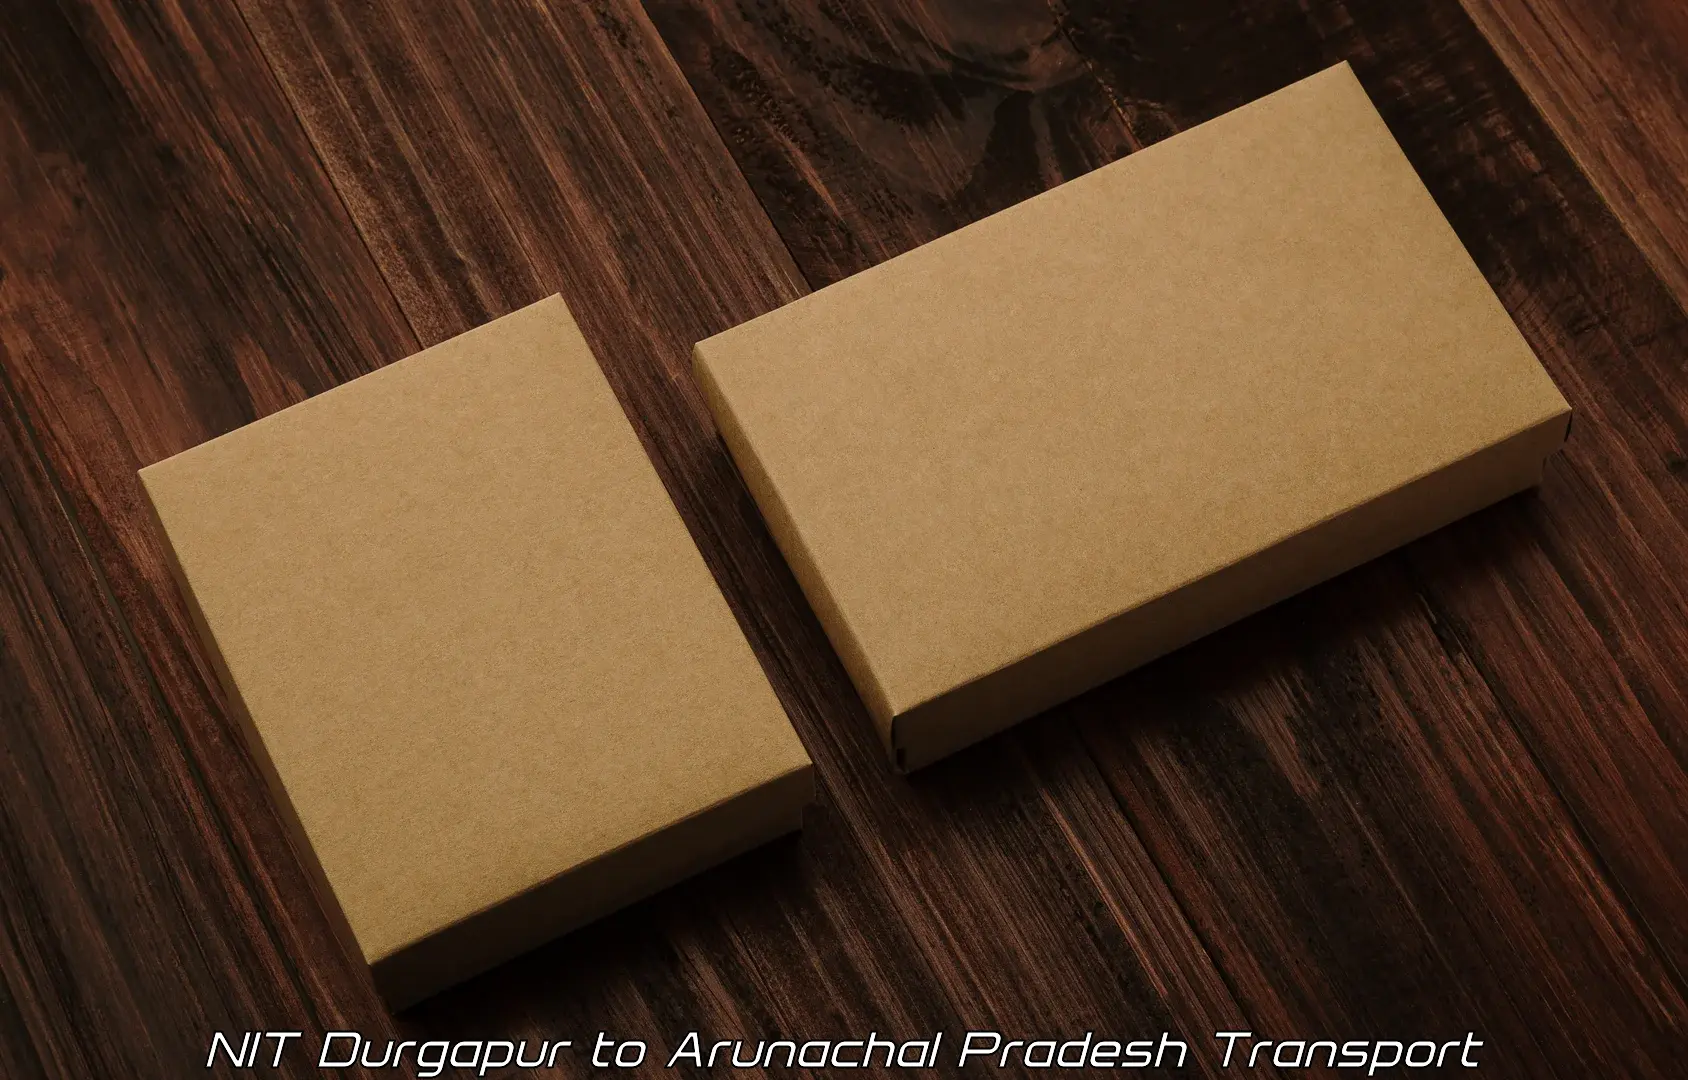 Vehicle parcel service NIT Durgapur to Arunachal Pradesh